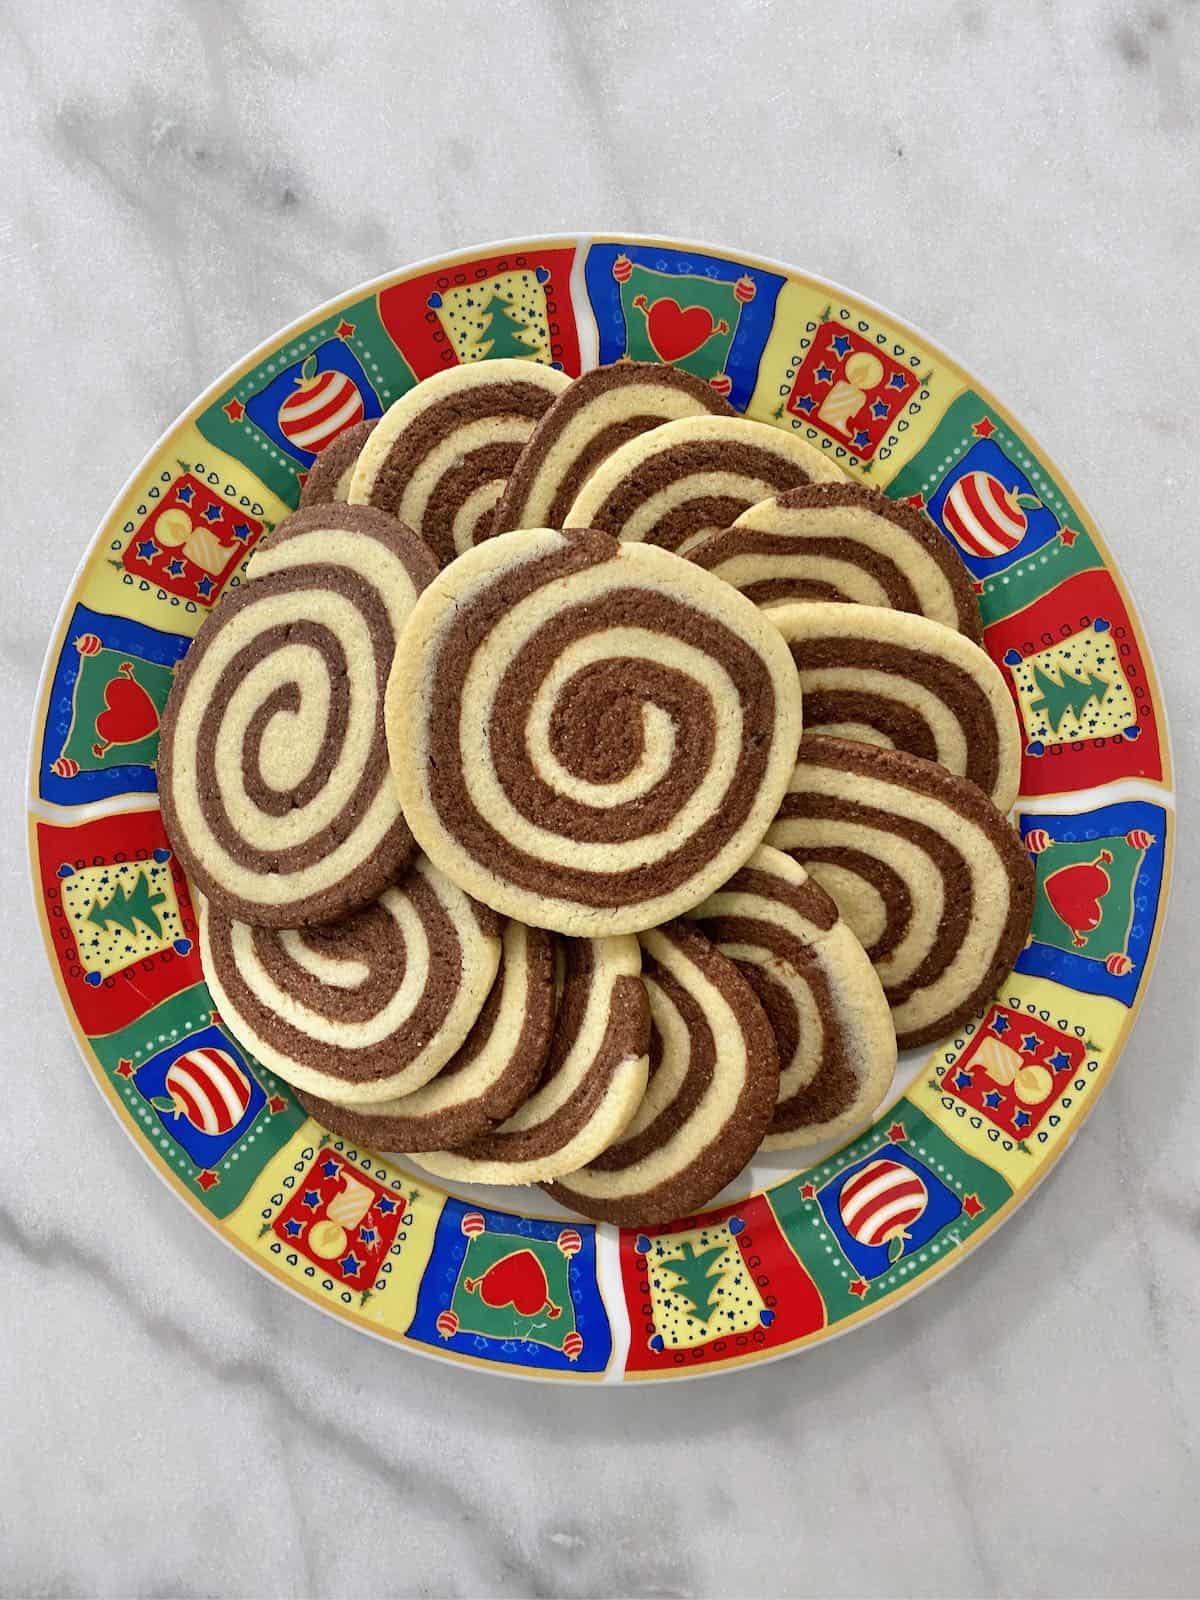 Pinwheel cookies on a Christmas plate